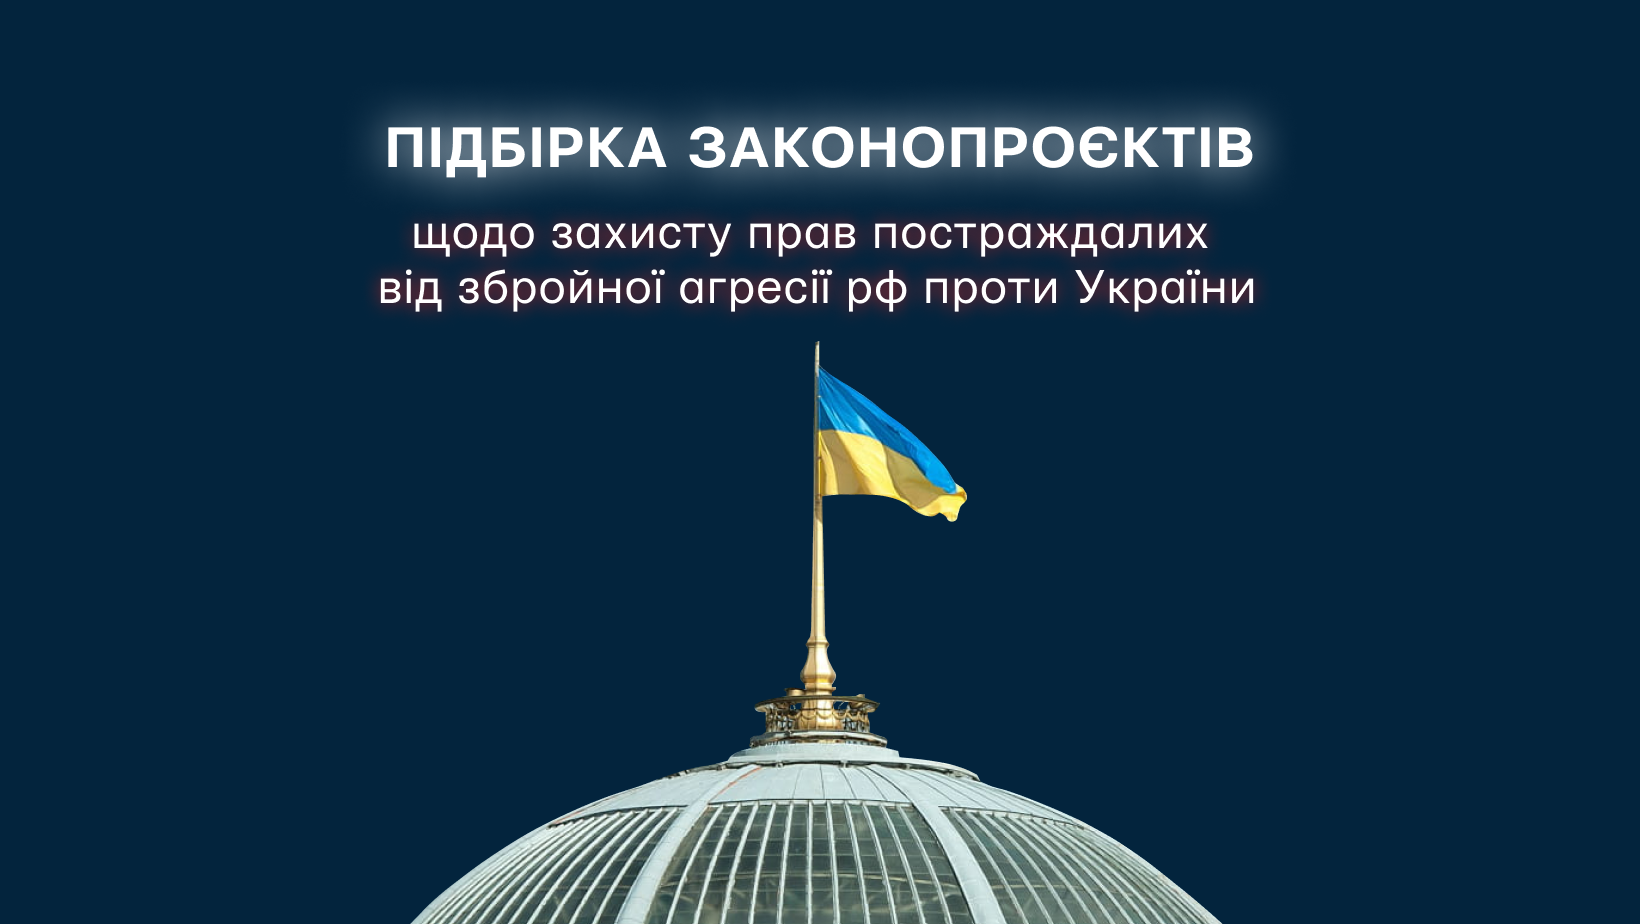 Підбірка законопроєктів, що стосуються захисту прав постраждалих від збройної агресії проти України